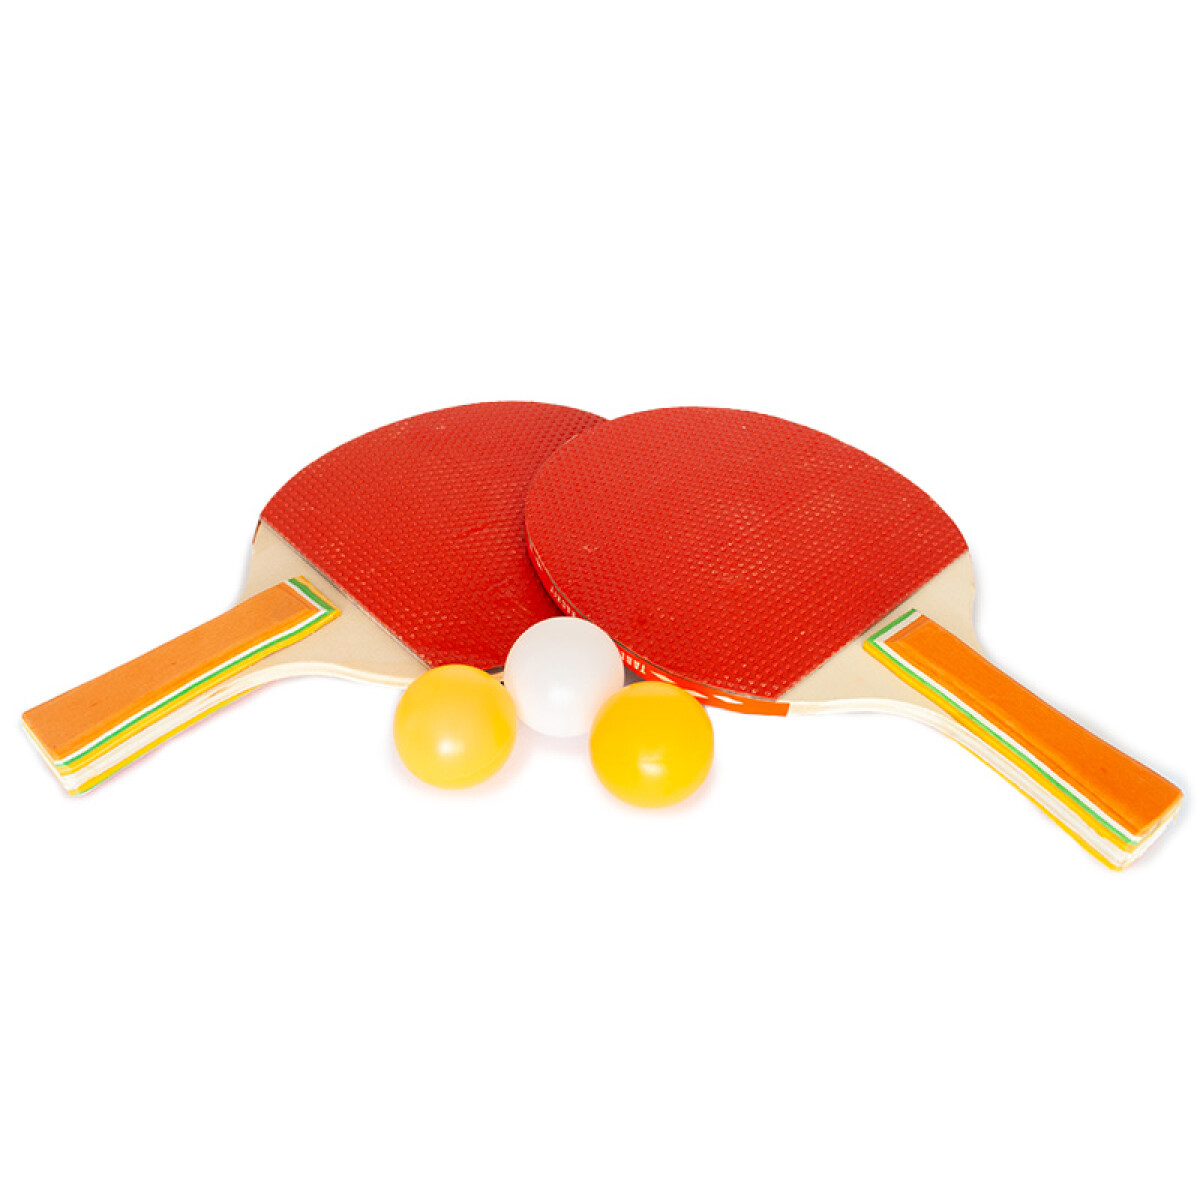 Ping Pong Set Con 3 pelotas 21*28cm 